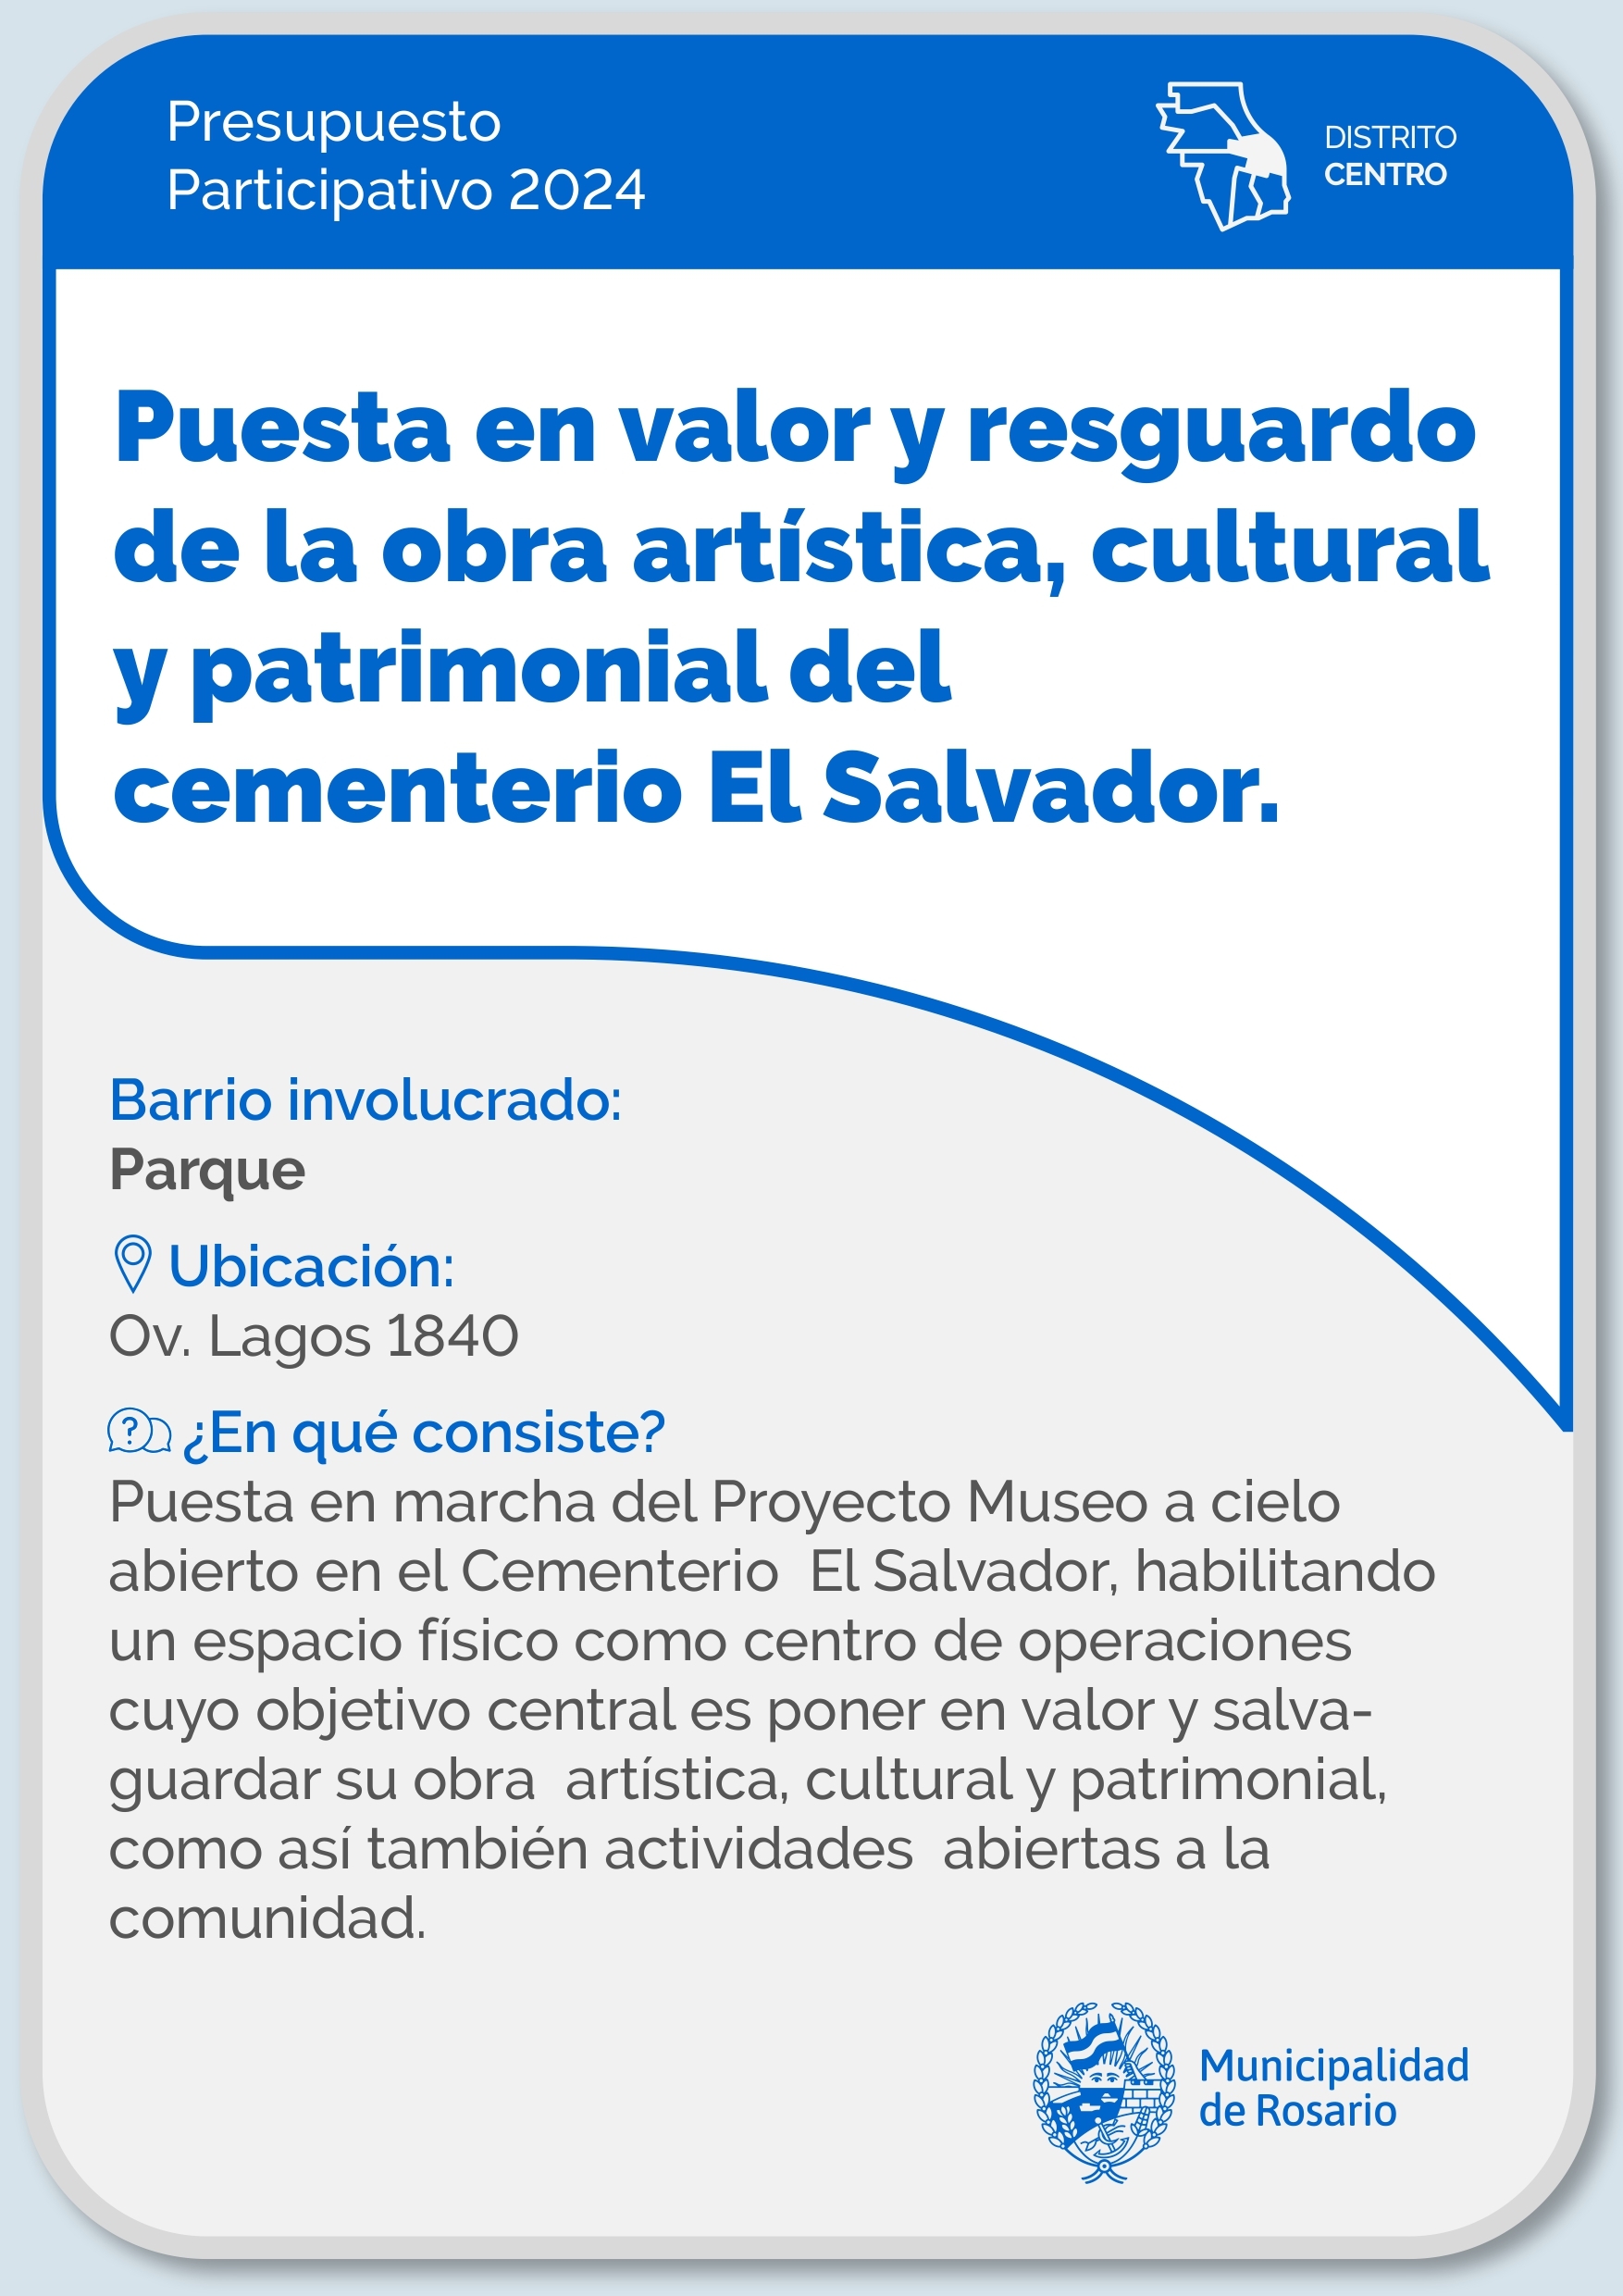 Puesta en valor y resguardo de la obra artística, cultural y patrimonial del cementerio El Salvador - Distrito Centro